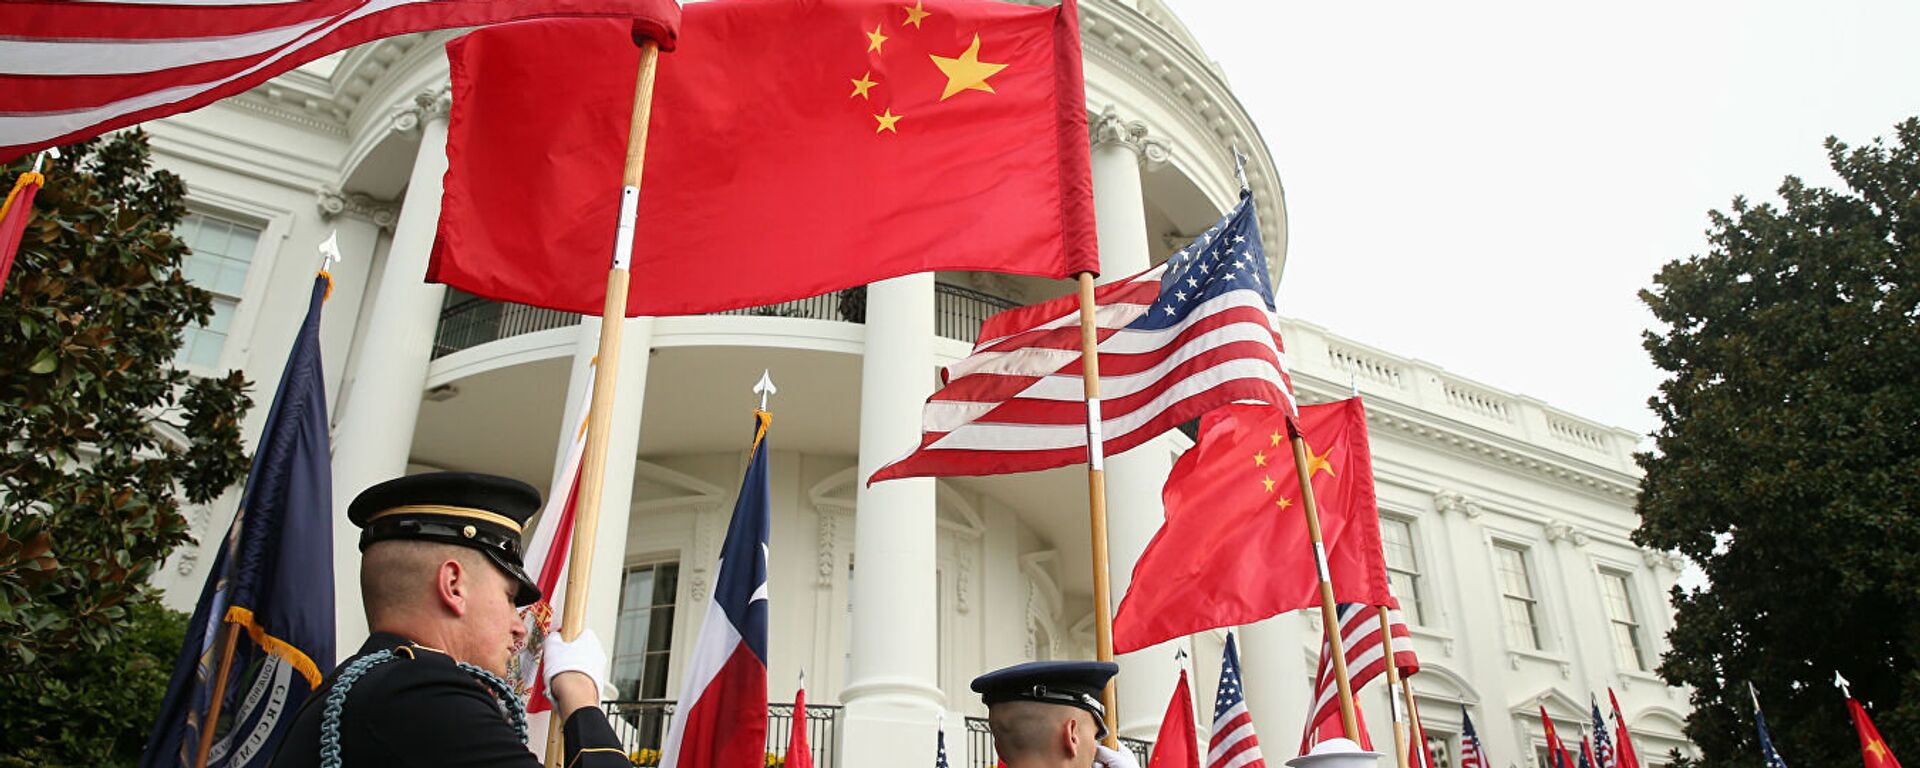 Người bảo vệ danh dự tại Nhà Trắng ở Washington với cờ của Hoa Kỳ và Trung Quốc. - Sputnik Việt Nam, 1920, 14.04.2021